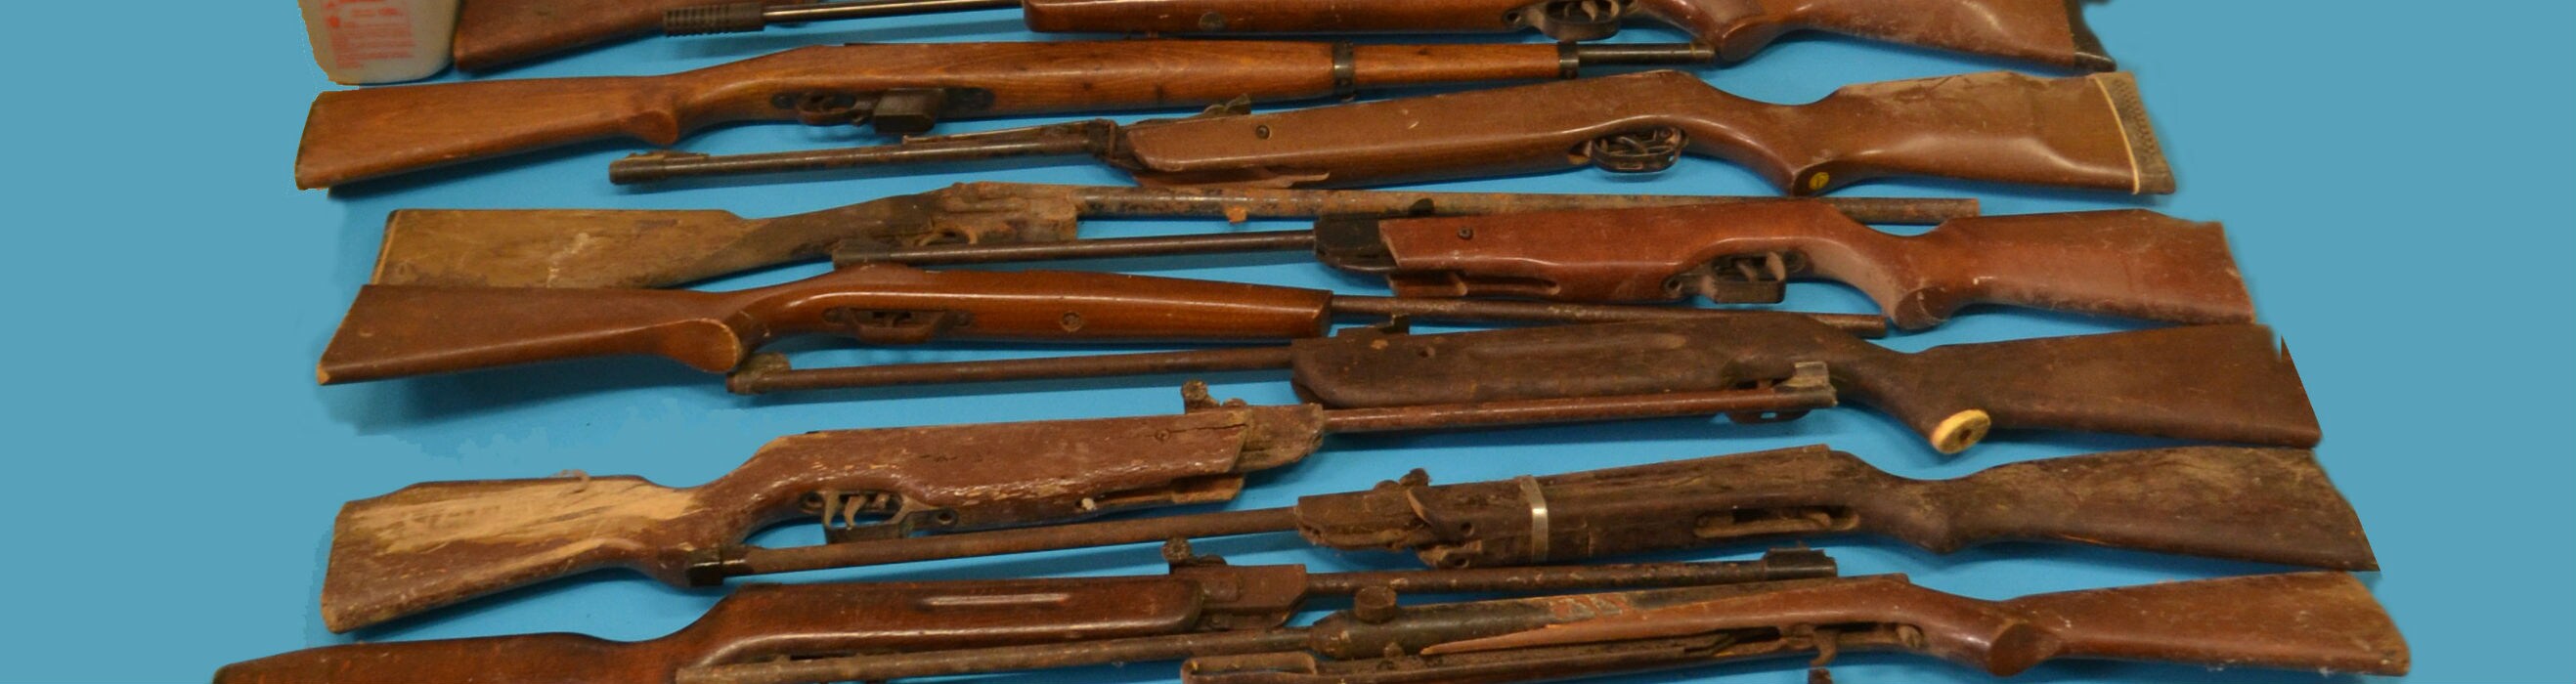 Armas encontradas en la vivienda de Linares